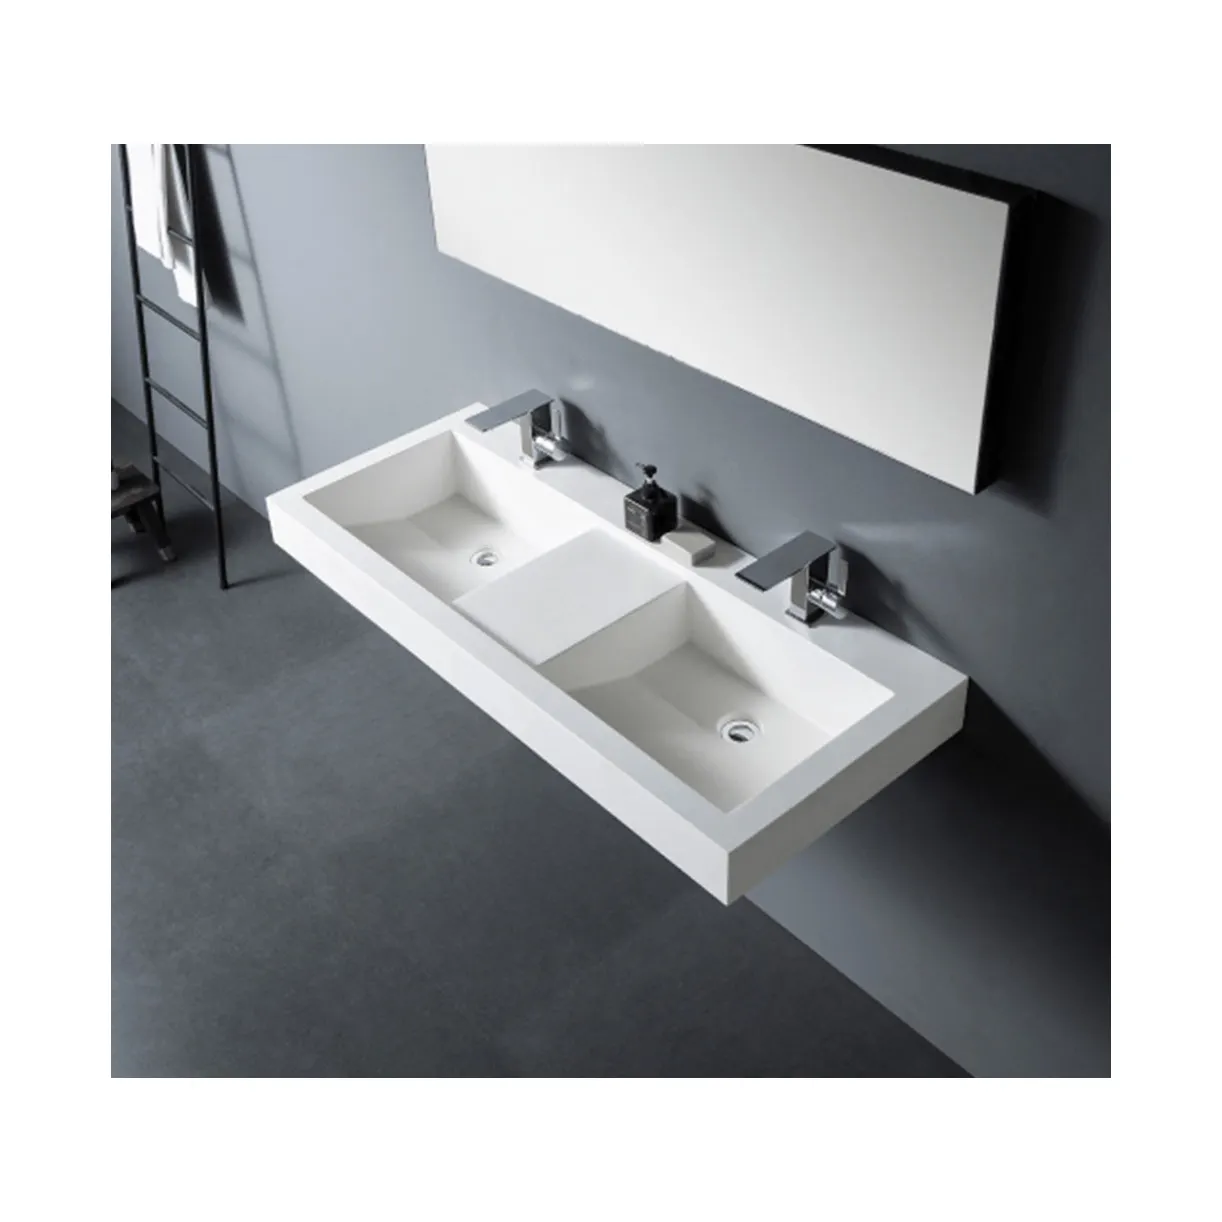 Bak mandi kamar mandi akrilik berbentuk persegi panjang standar bak cuci kamar mandi permukaan padat